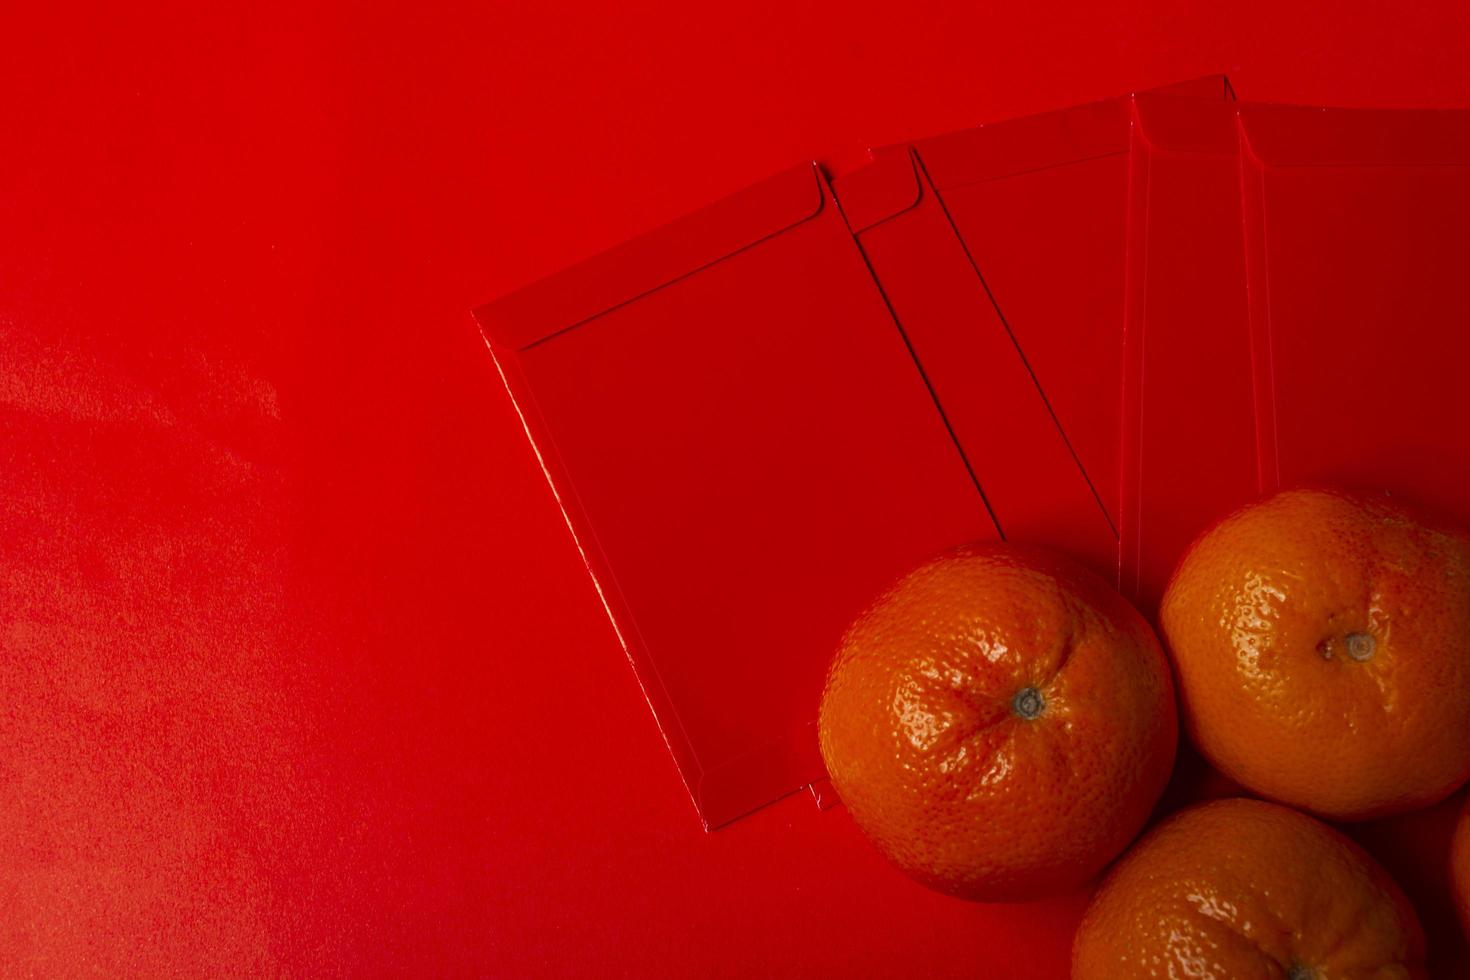 kinesiskt nyår koncept - mandarin apelsiner och rött paket foto